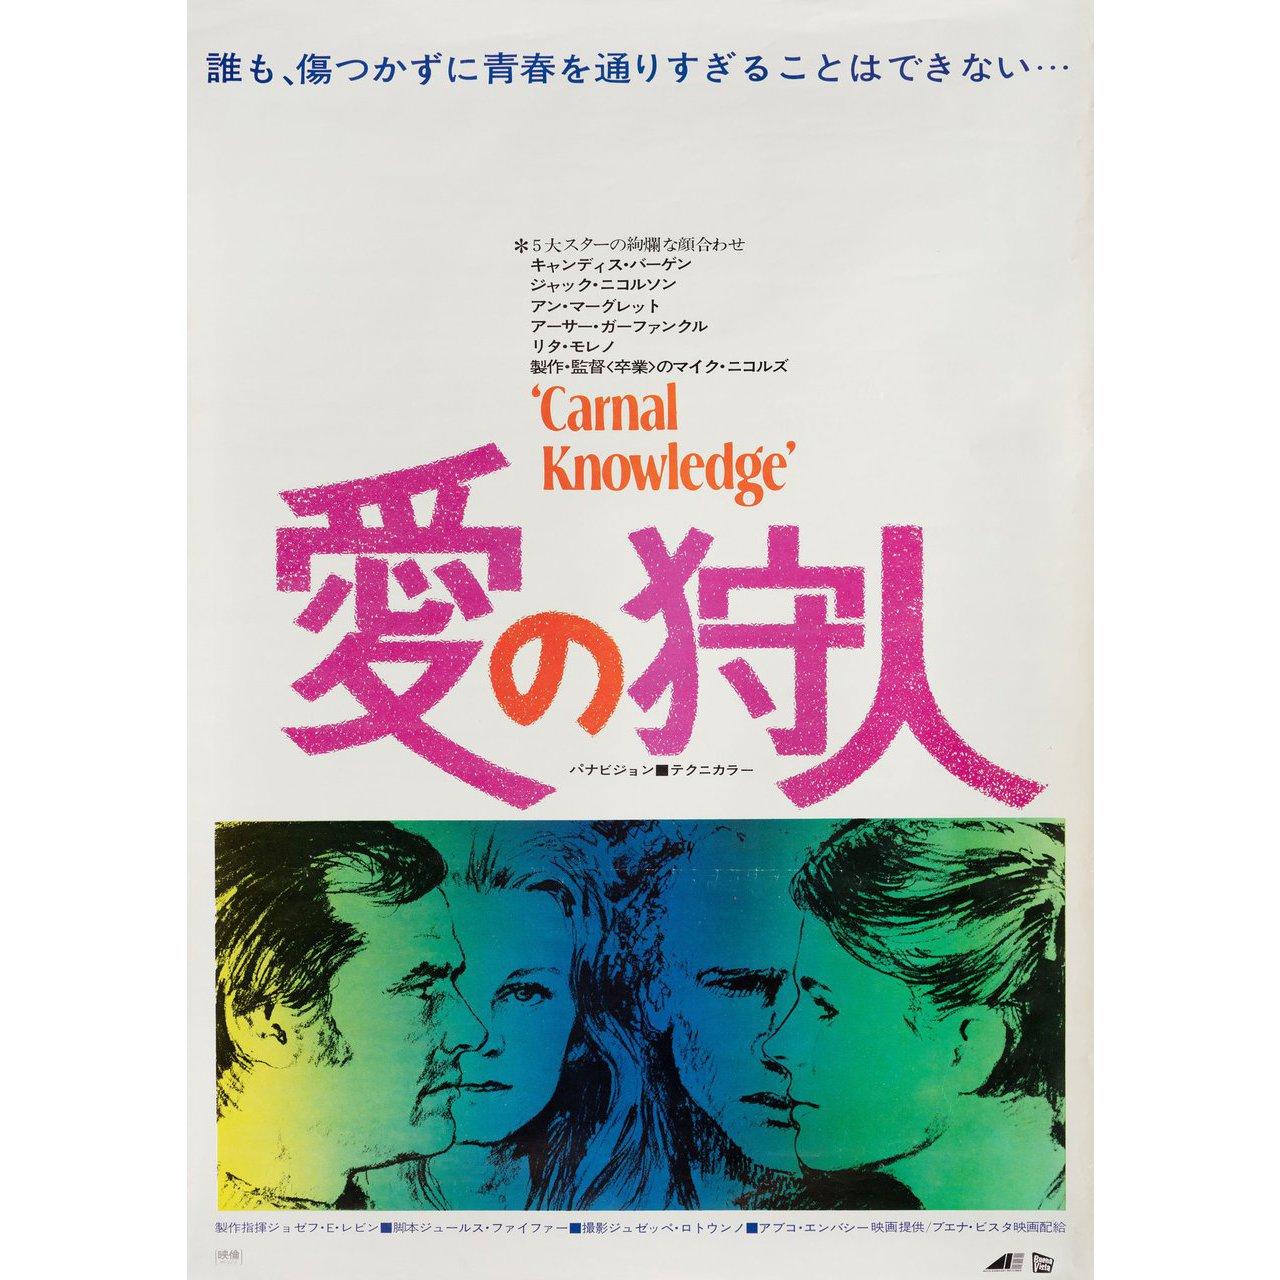 Originales japanisches B2-Plakat von 1971 für den Film Carnal Knowledge unter der Regie von Mike Nichols mit Jack Nicholson / Ann-Margret / Art Garfunkel / Candice Bergen. Sehr guter Zustand, gerollt. Bitte beachten Sie: Die Größe ist in Zoll